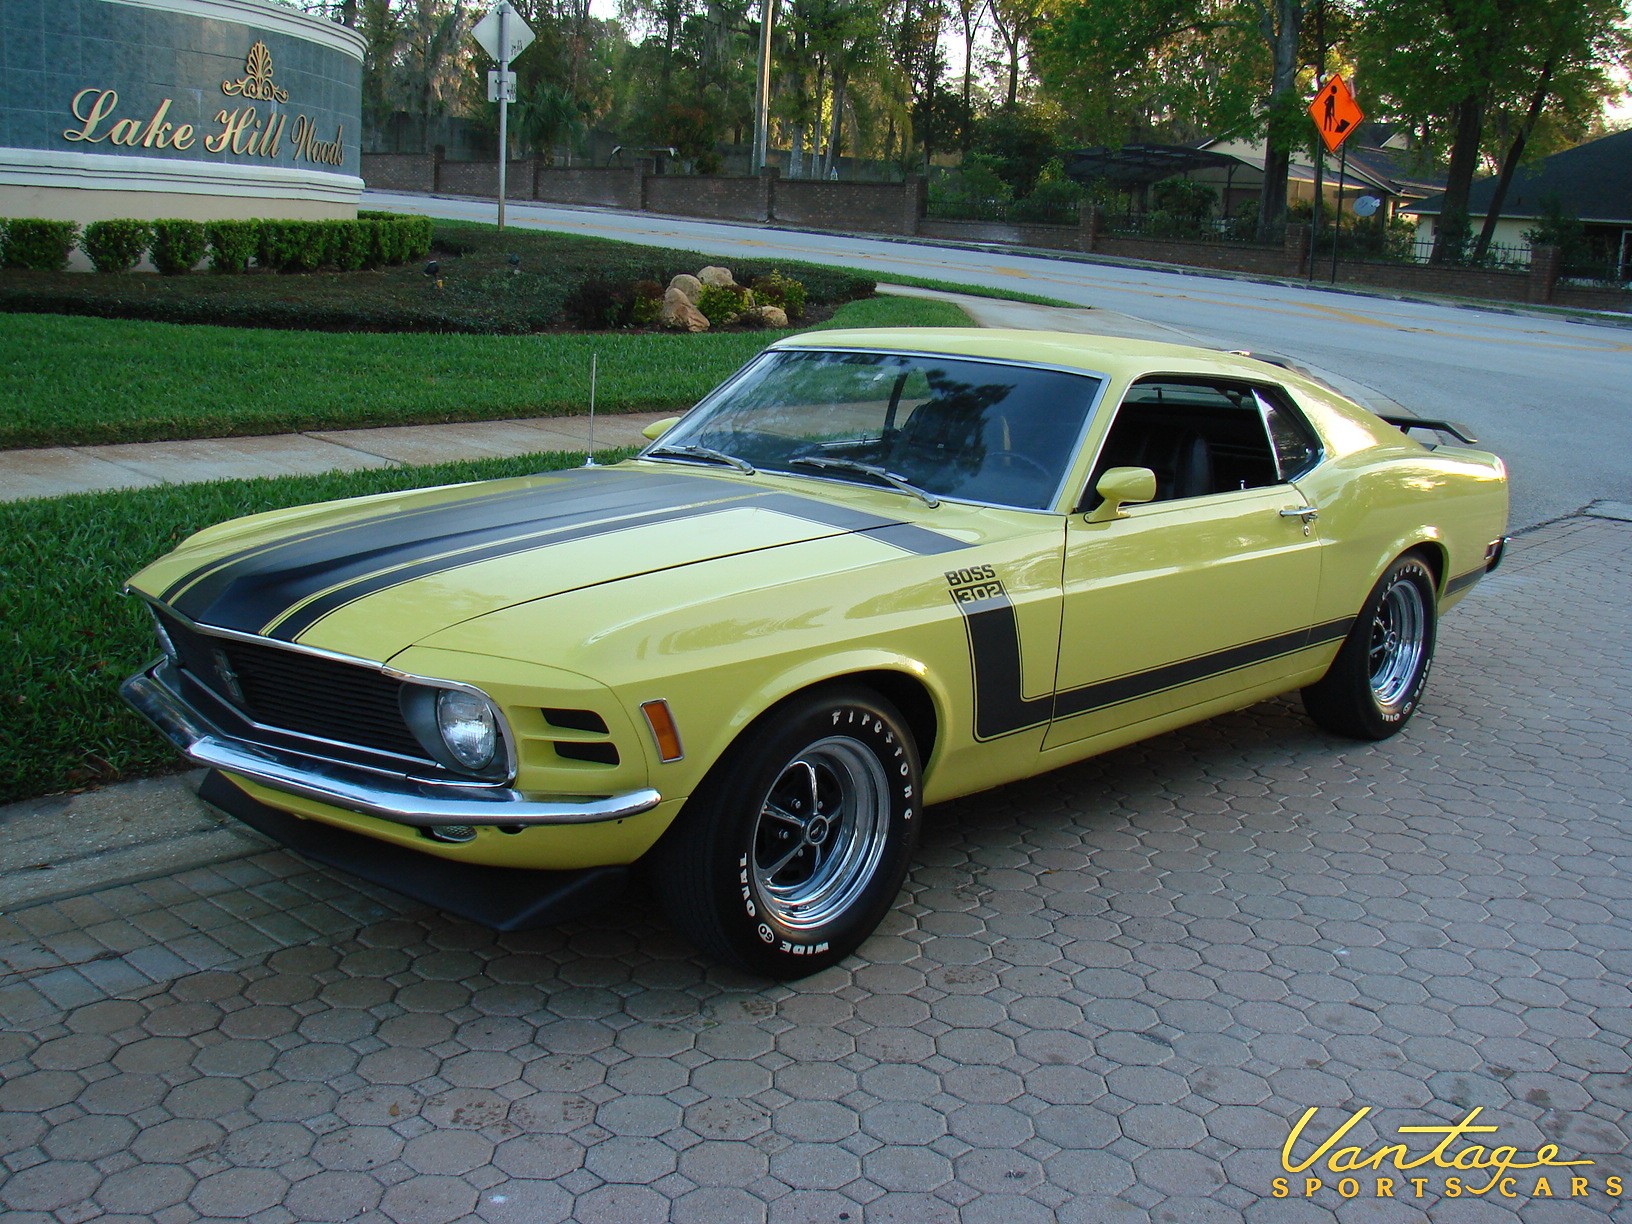 1970 Mustang Boss 302 W Deluxe Interior Sold Vantage